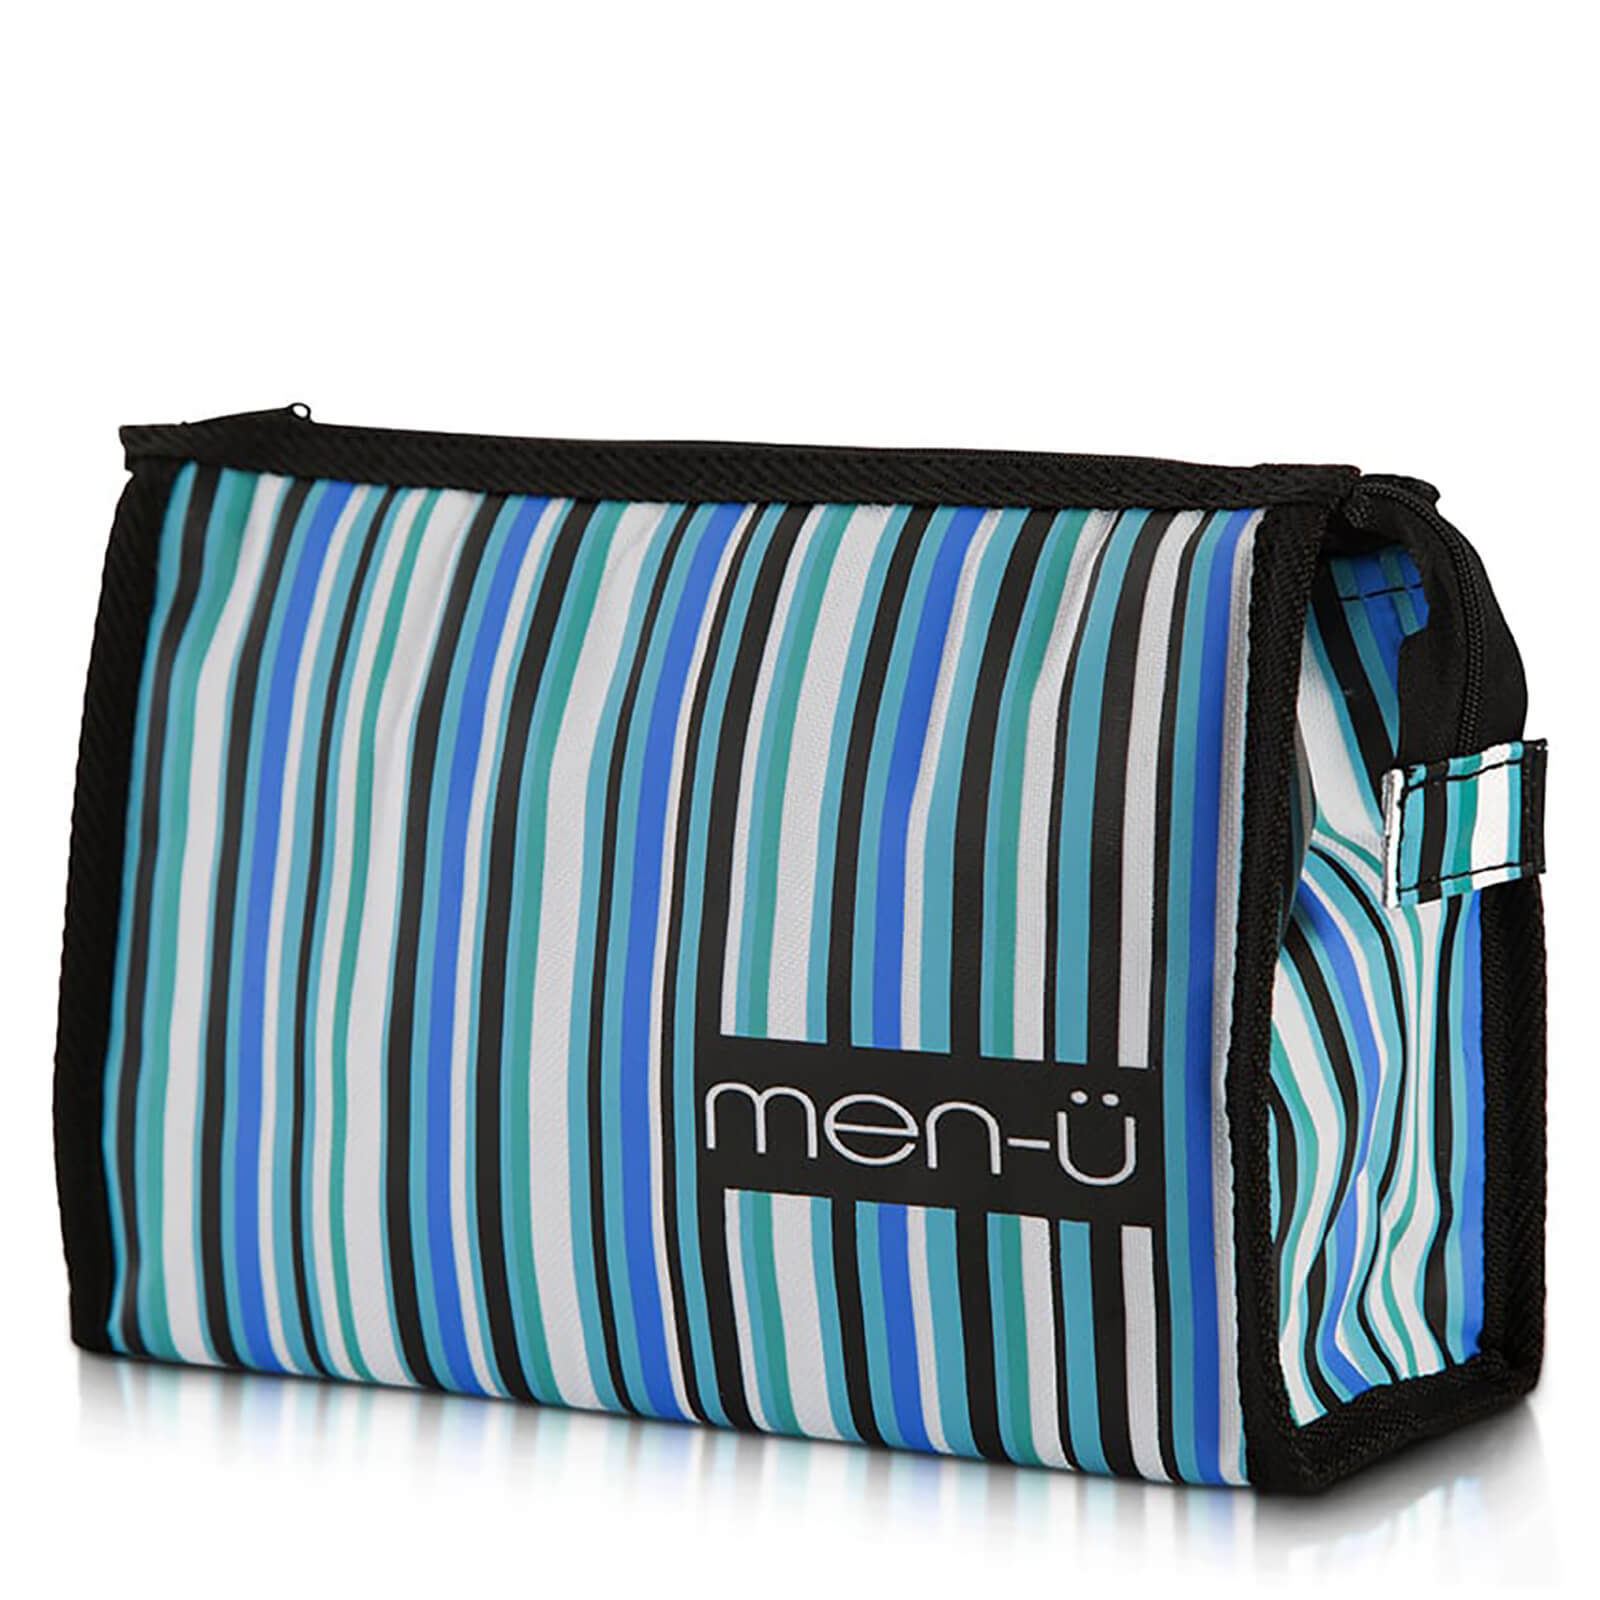 men-u men-ü Stripes Toiletry Bag